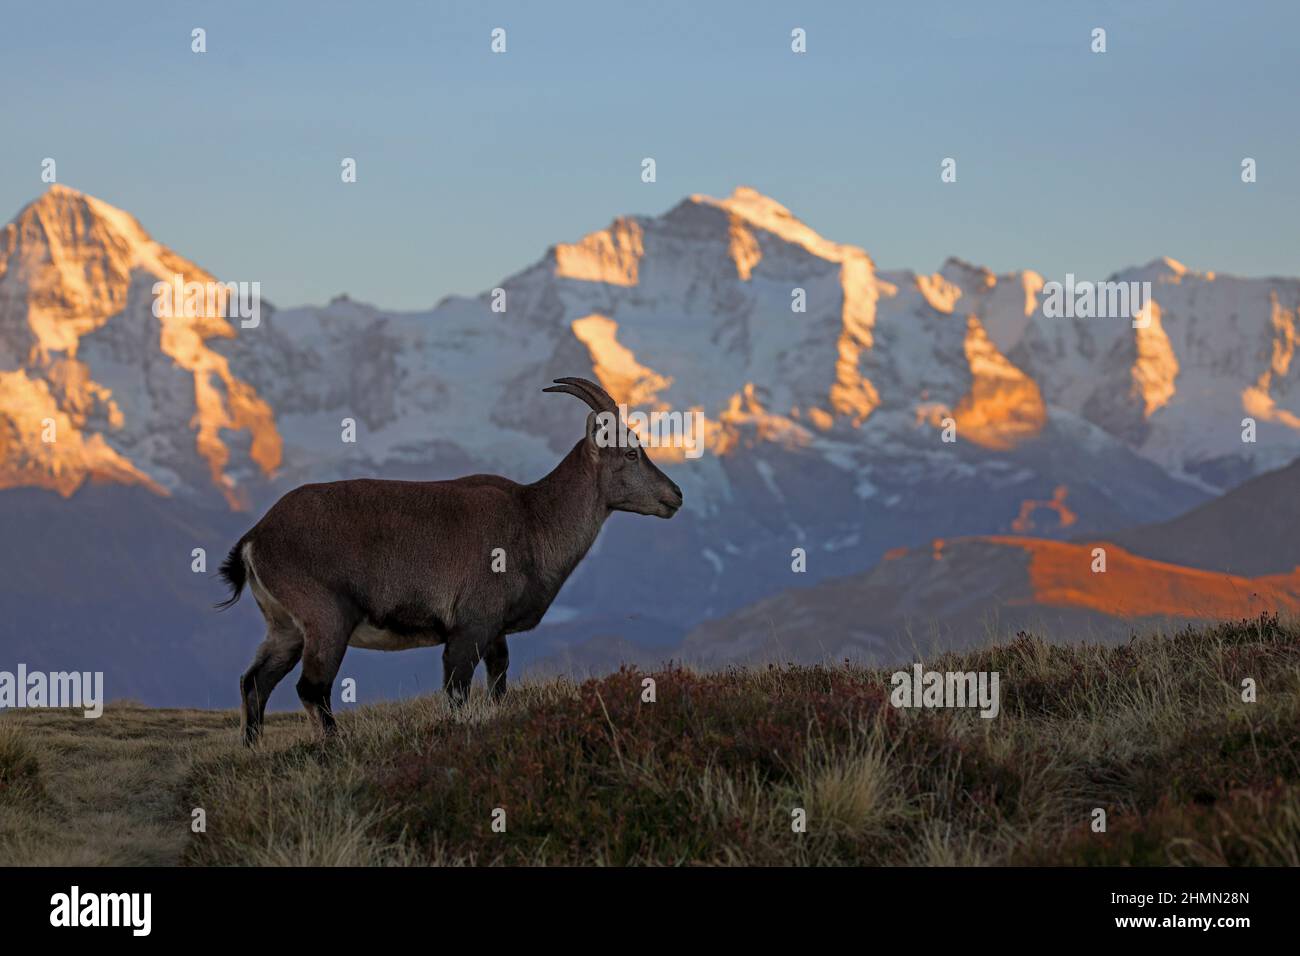 Ibex alpino (Capra ibex, Capra ibex ibex), ibex hembra de pie en el brezo de montaña en el telón de fondo de los Alpes berneses con Jungfrau en el Foto de stock